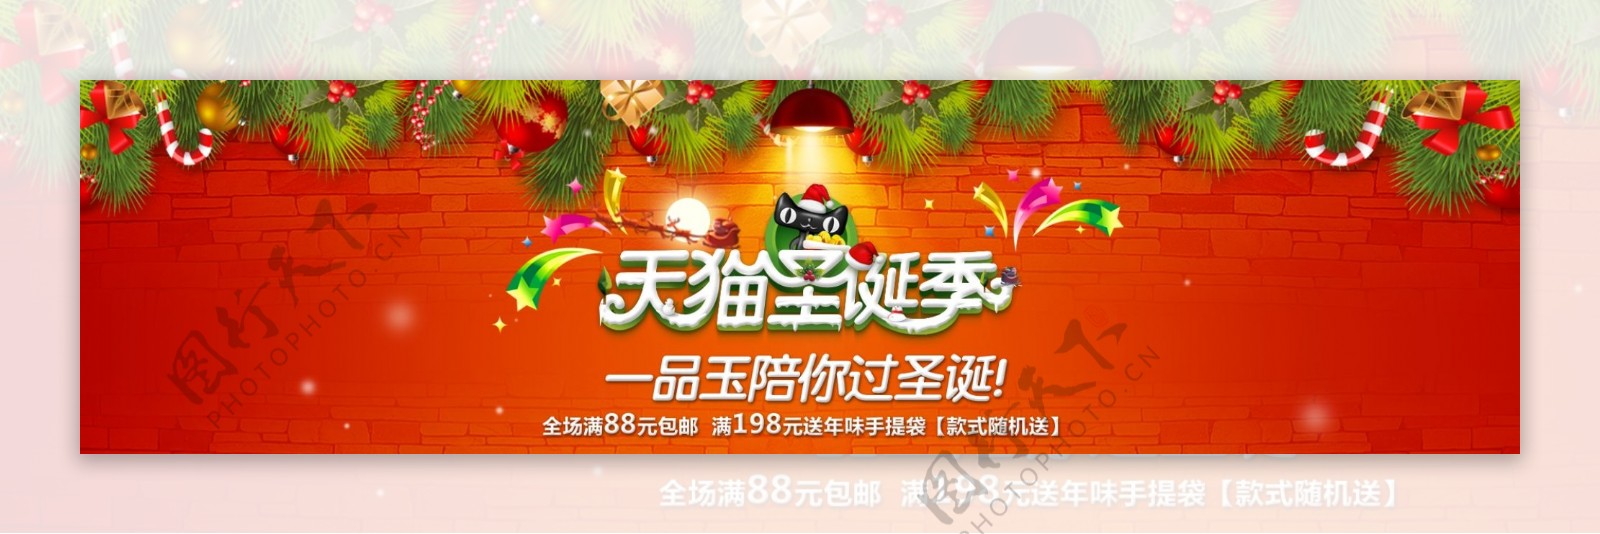 天猫圣诞海报节日海报图片